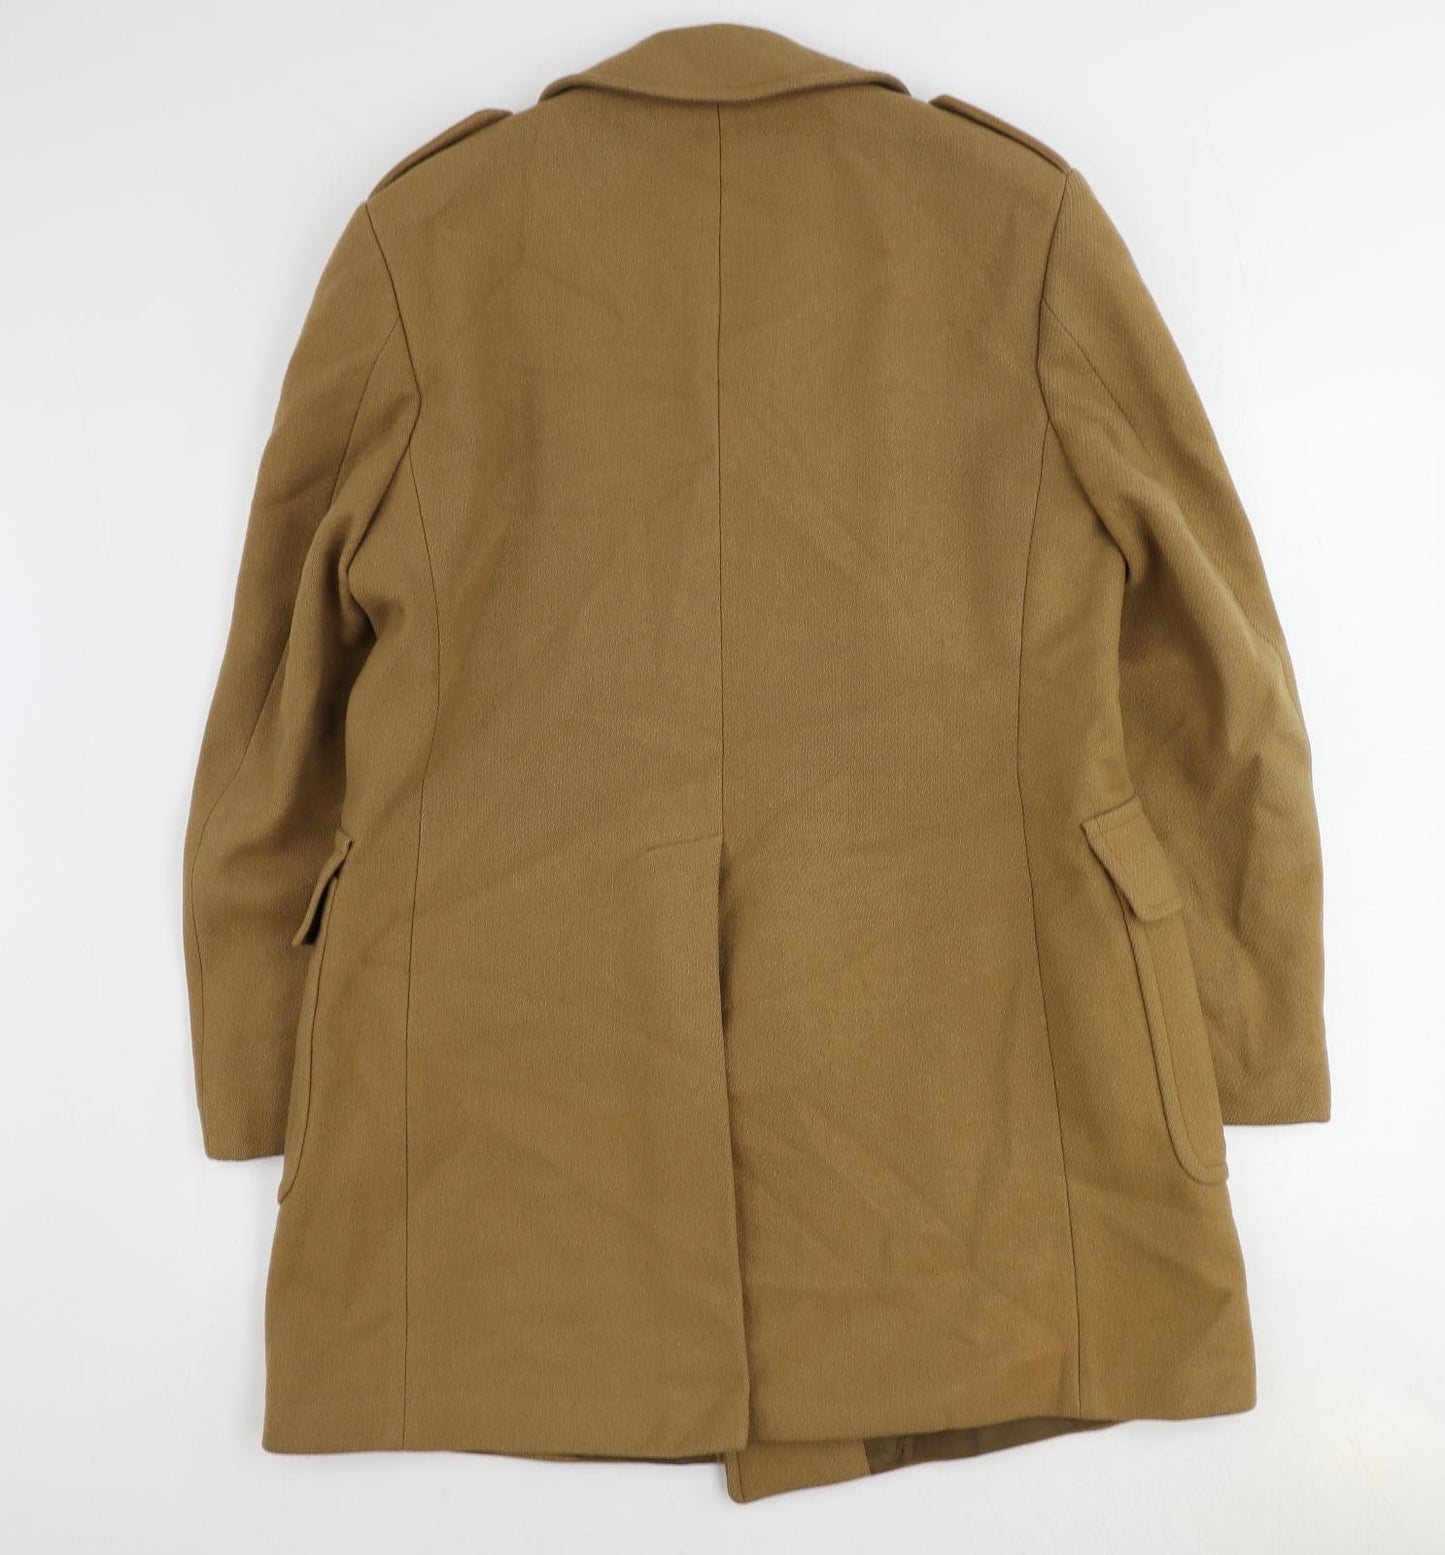 St Michael Mens Brown Pea Coat Coat Size L Button